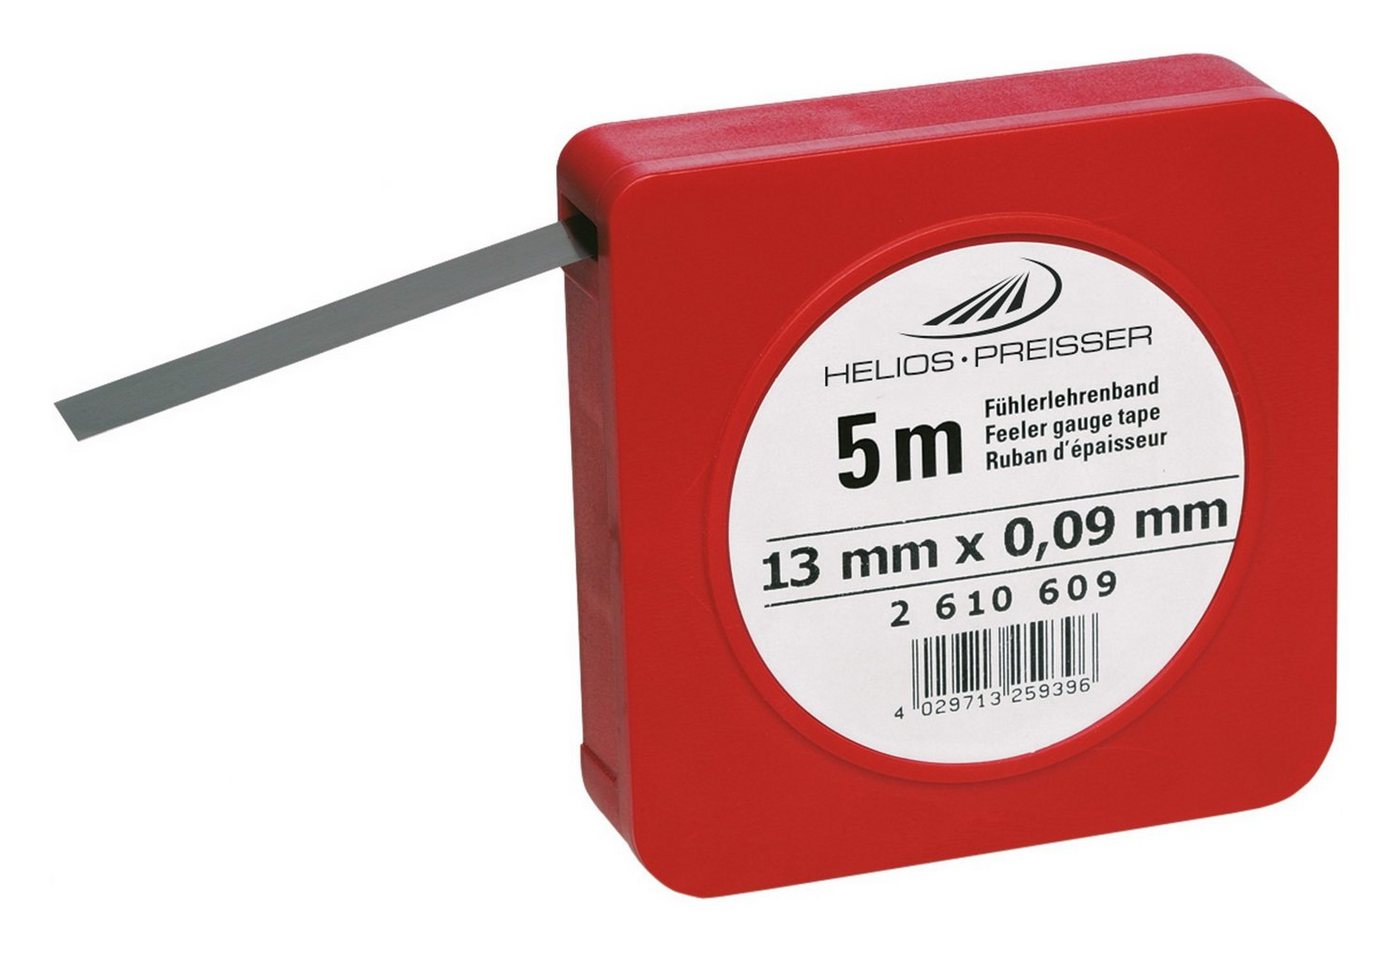 HELIOS PREISSER Fühlerlehre, Fühlerlehrenband 0,5 mm von HELIOS PREISSER